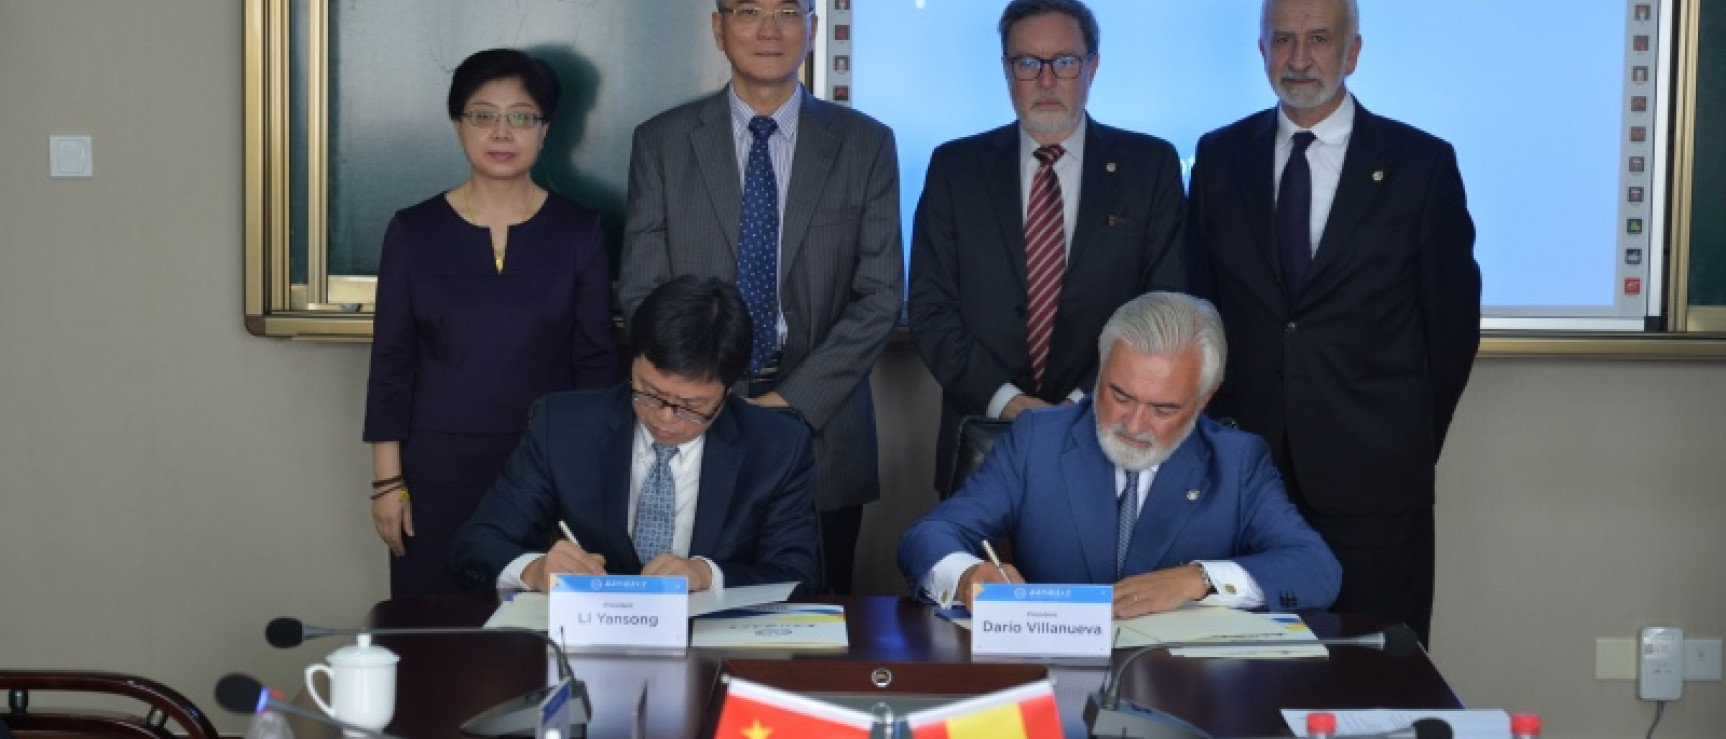 Darío Villanueva y Li Yansong firman un convenio de colaboración entre ambas instituciones.